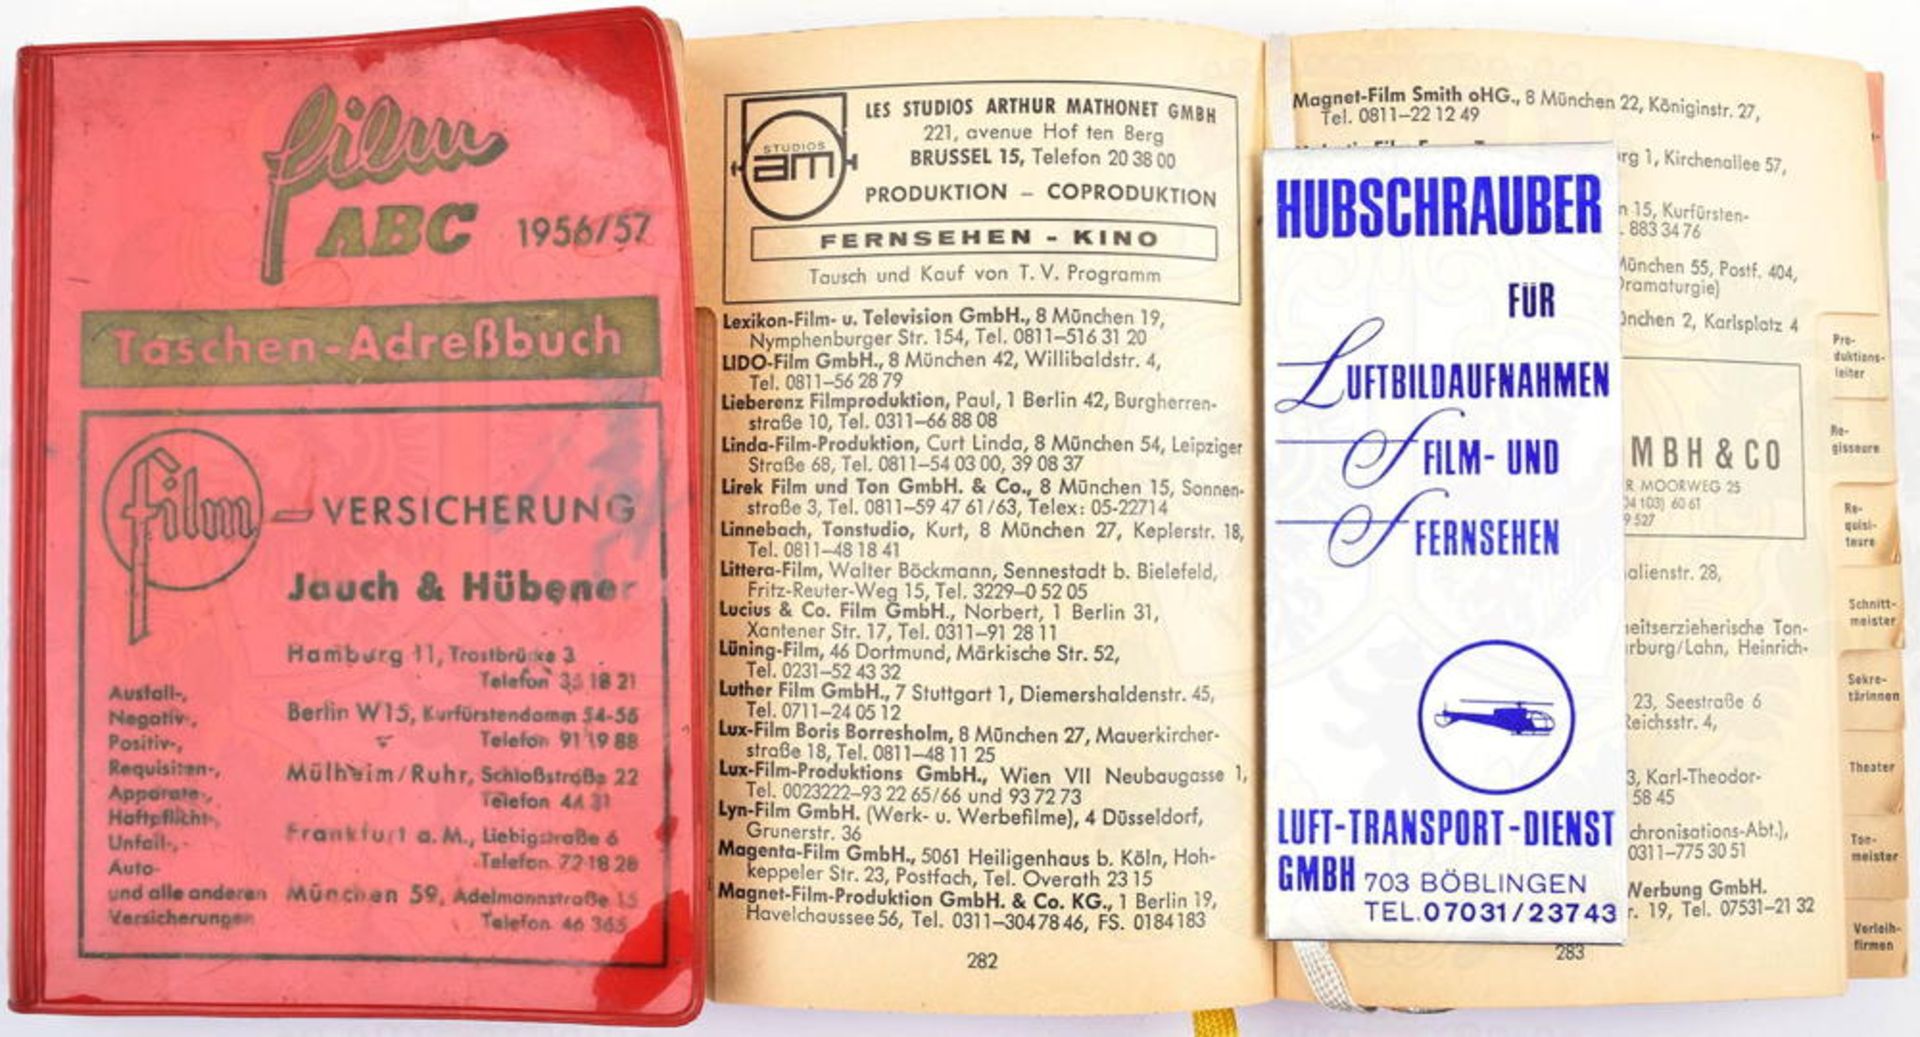 2 ADRESSBÜCHER FILM-ABC, 2 Ausgaben, Hildesheim/Berlin 1956/57 bzw. Hamburg 1968/69, tls. Abb., Werb